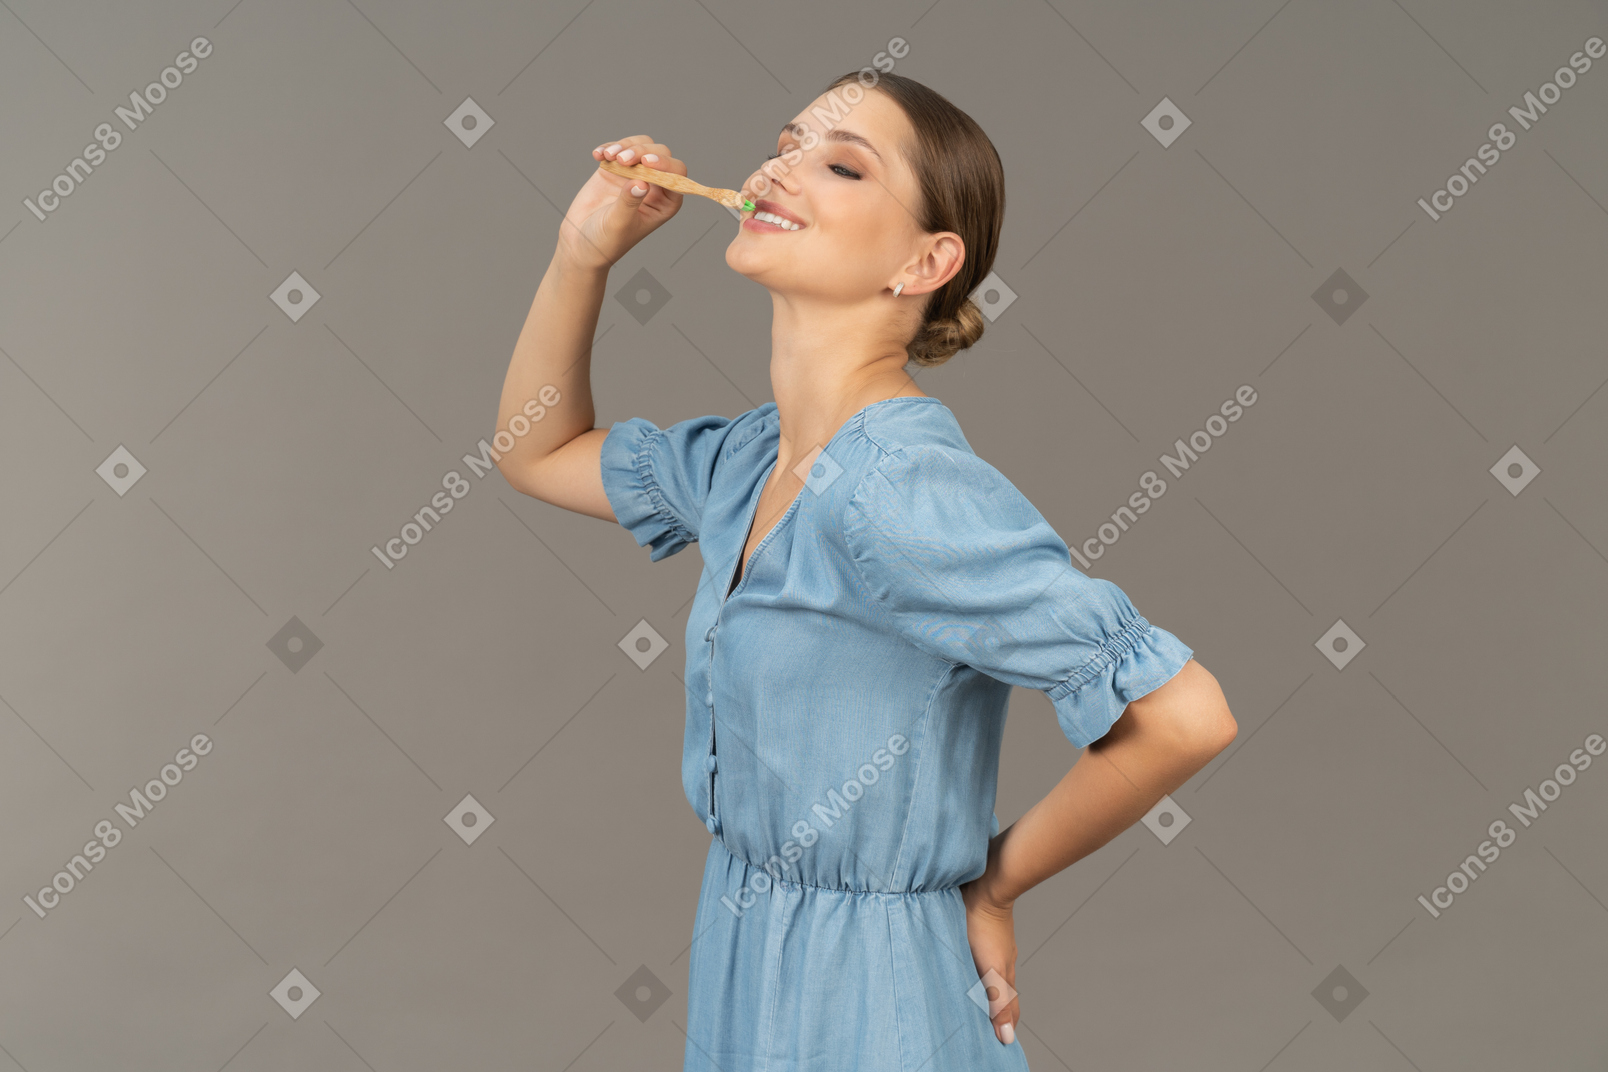 Vista de tres cuartos de una mujer joven en vestido azul cepillándose los dientes